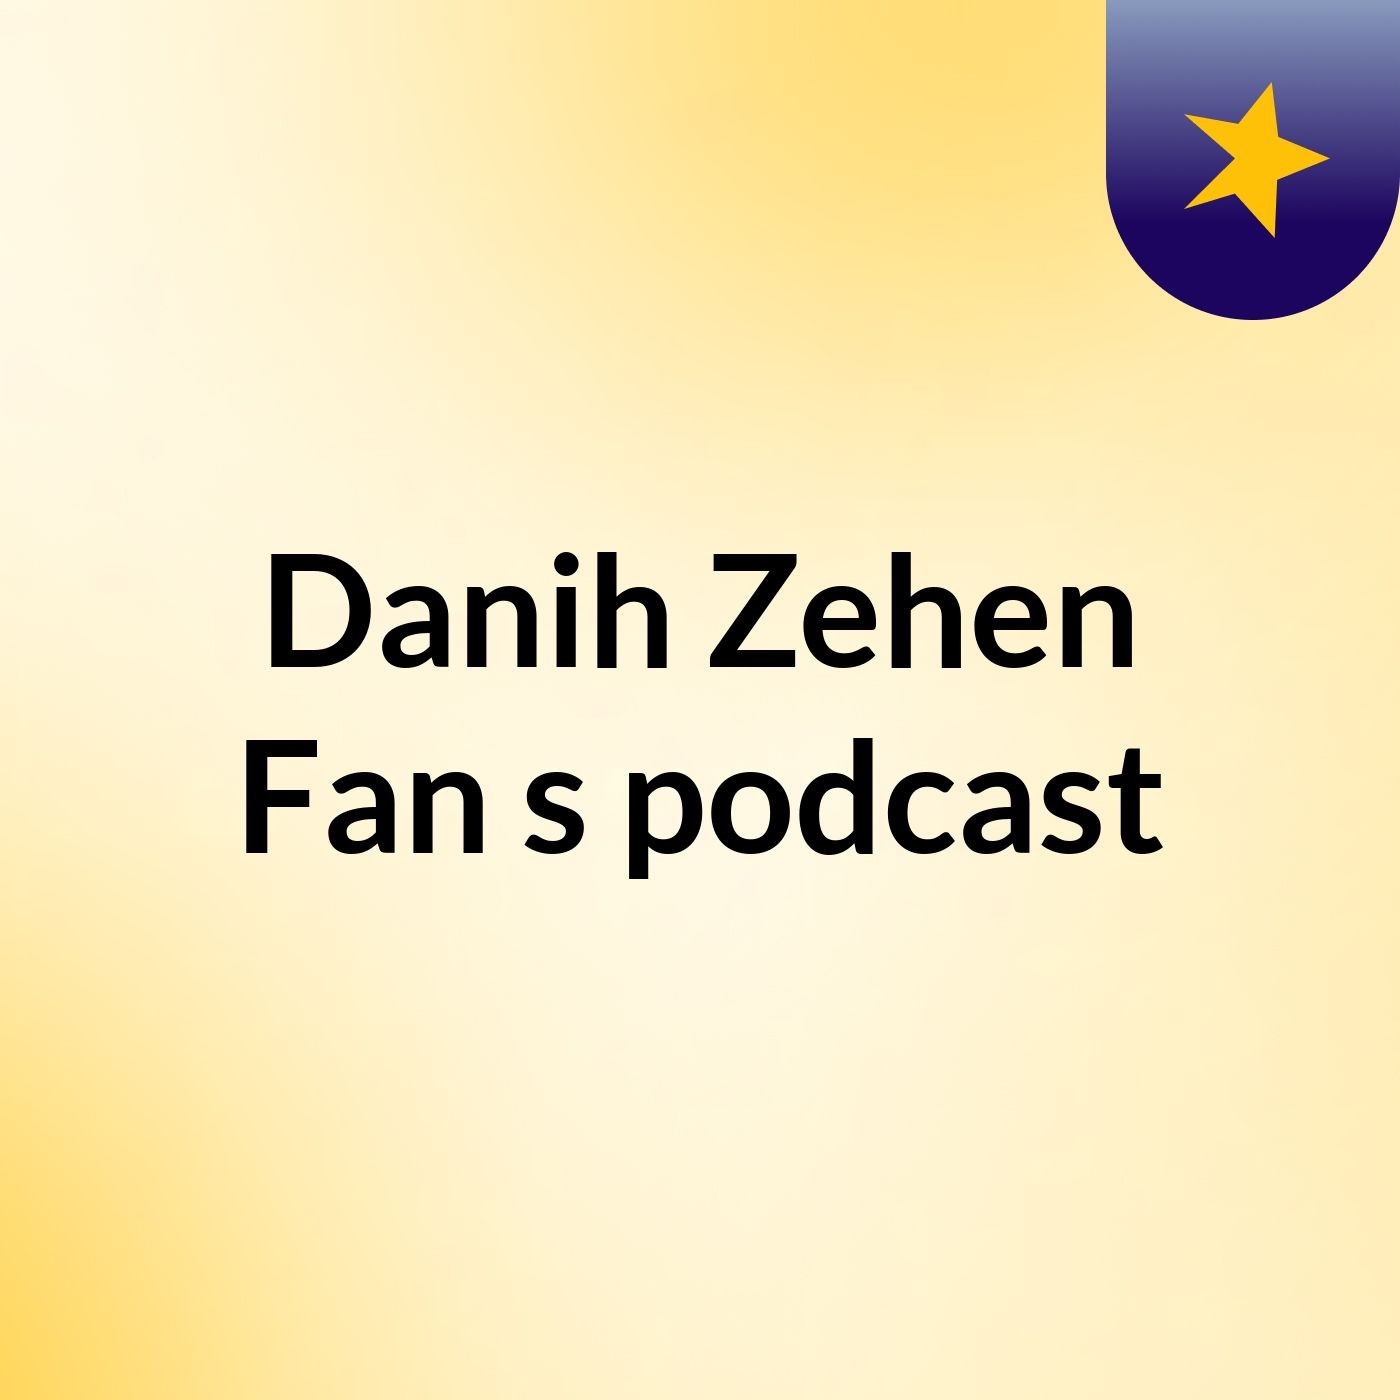 Episode 5 - Danih Zehen Fan's podcast